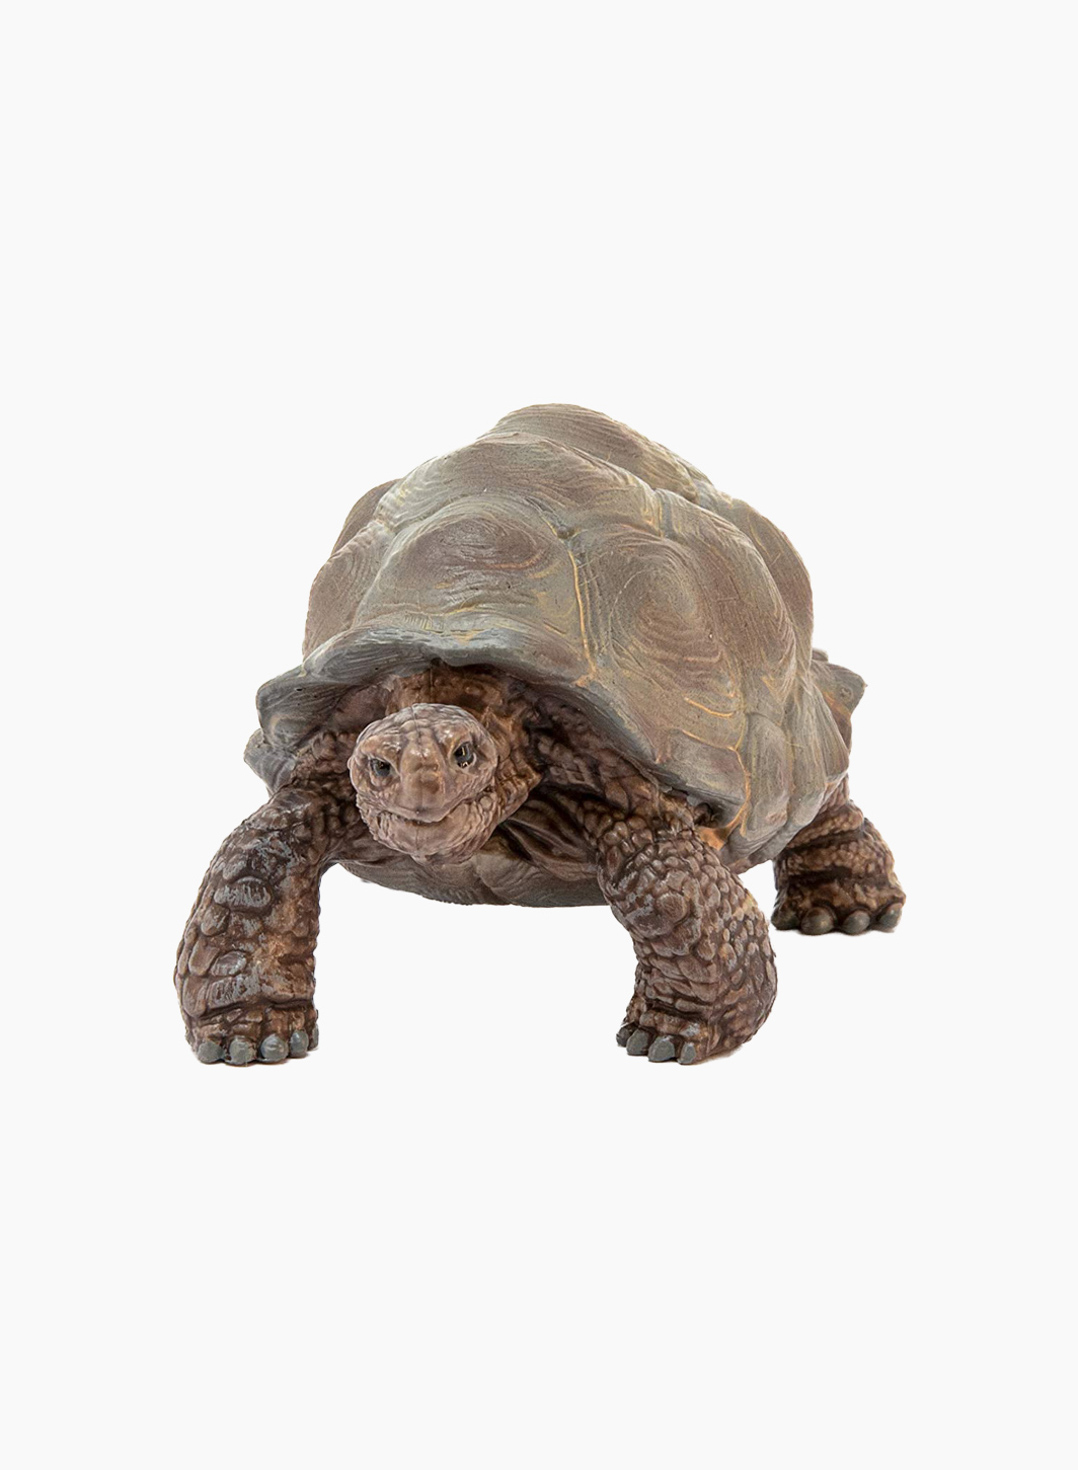 Schleich Animal figurine Giant Tortoise